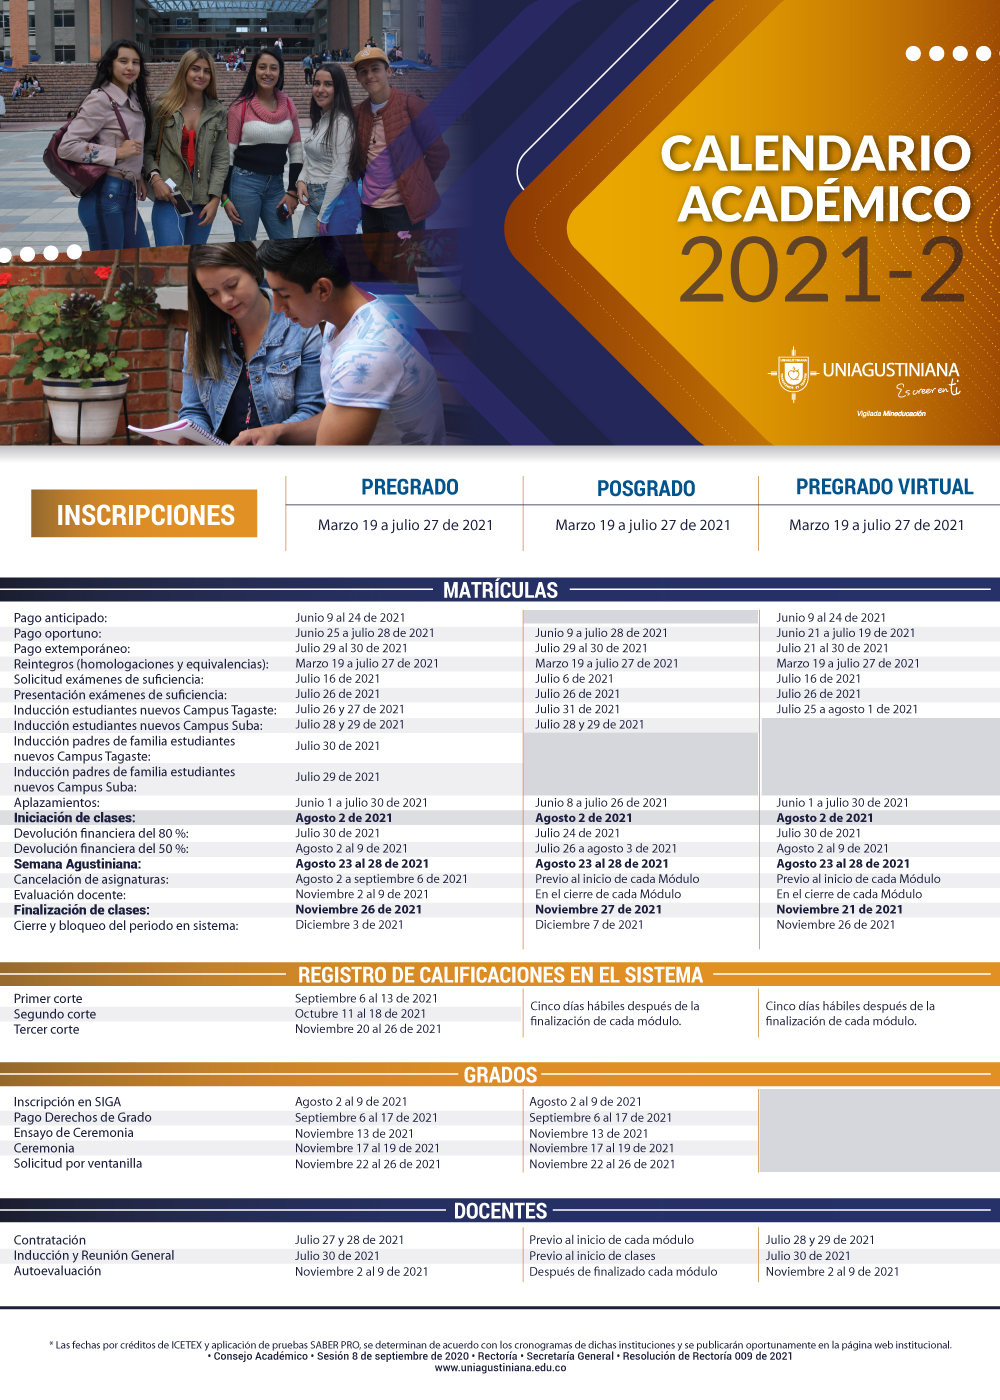 Calendario academico 2021-2